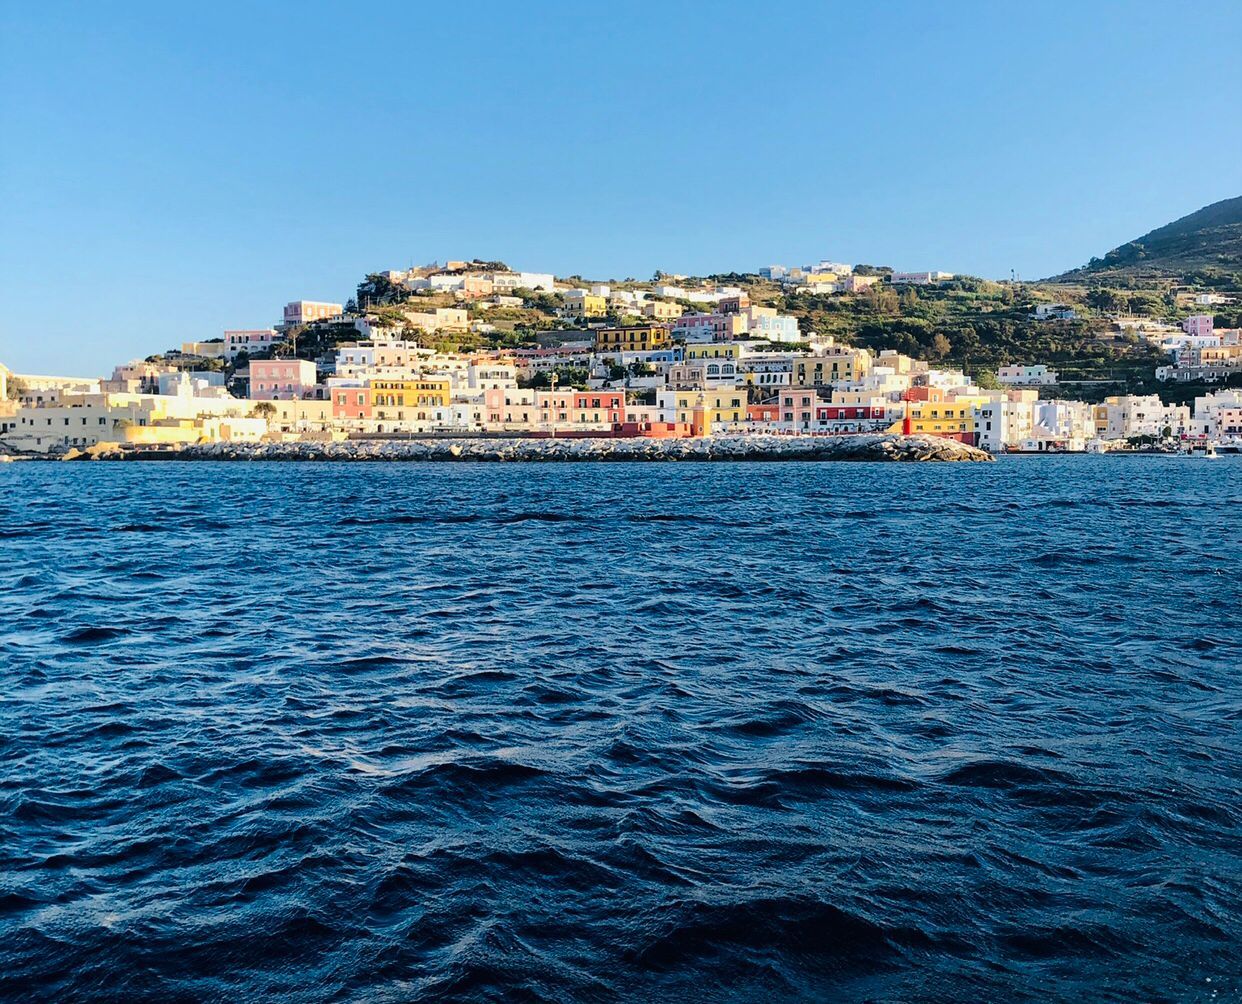 L'isola di Ponza vista dal traghetto